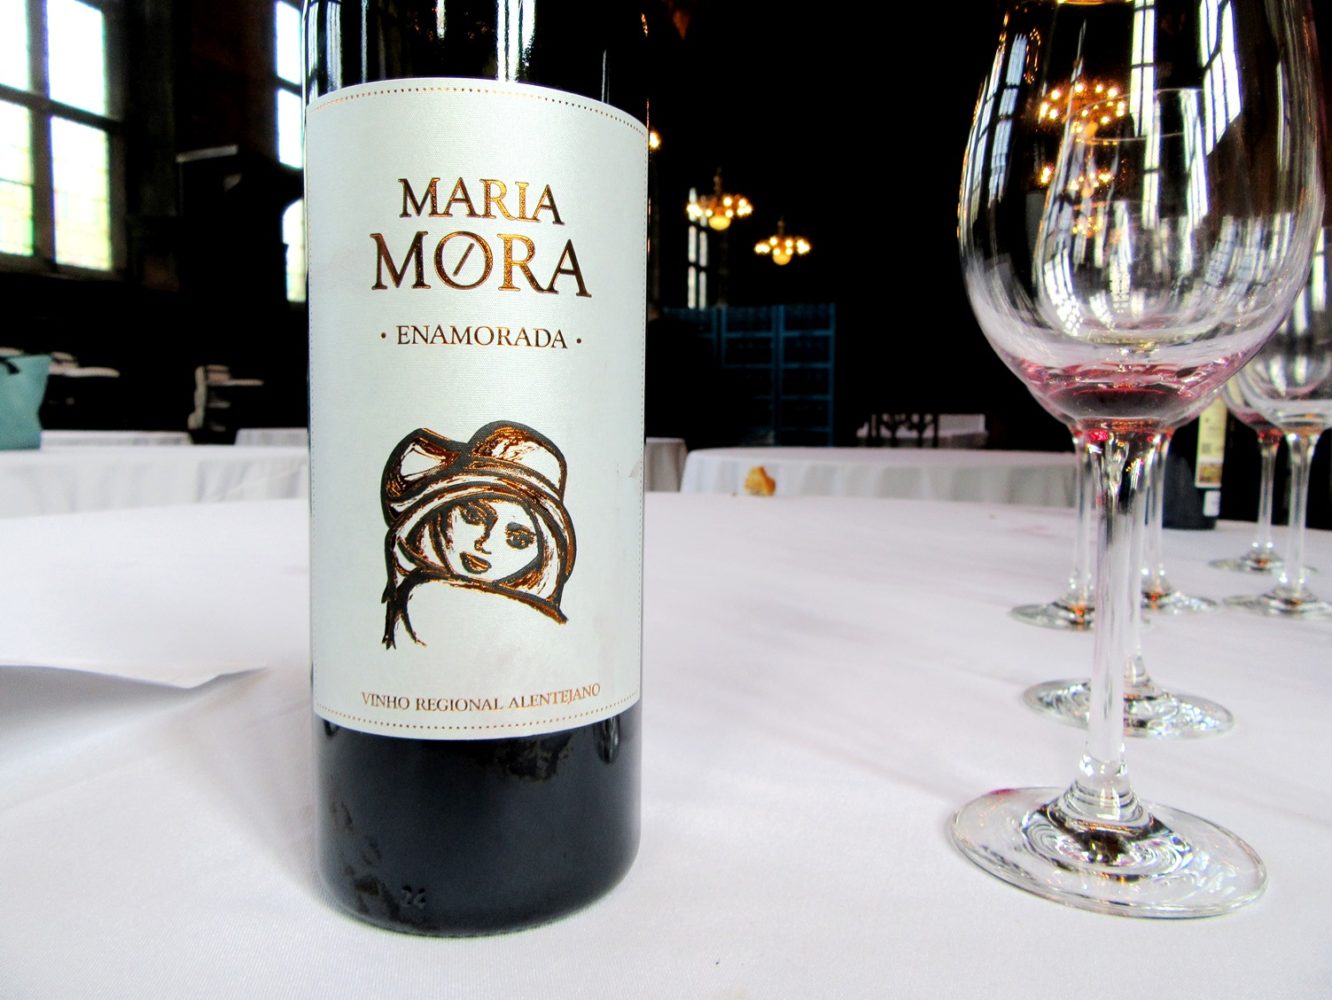 Magnum Wines Carlos Lucas, Maria Mora Enamorada Tinto, 2012, Vinho Regional Alentejo, Portugal, Wine Casual